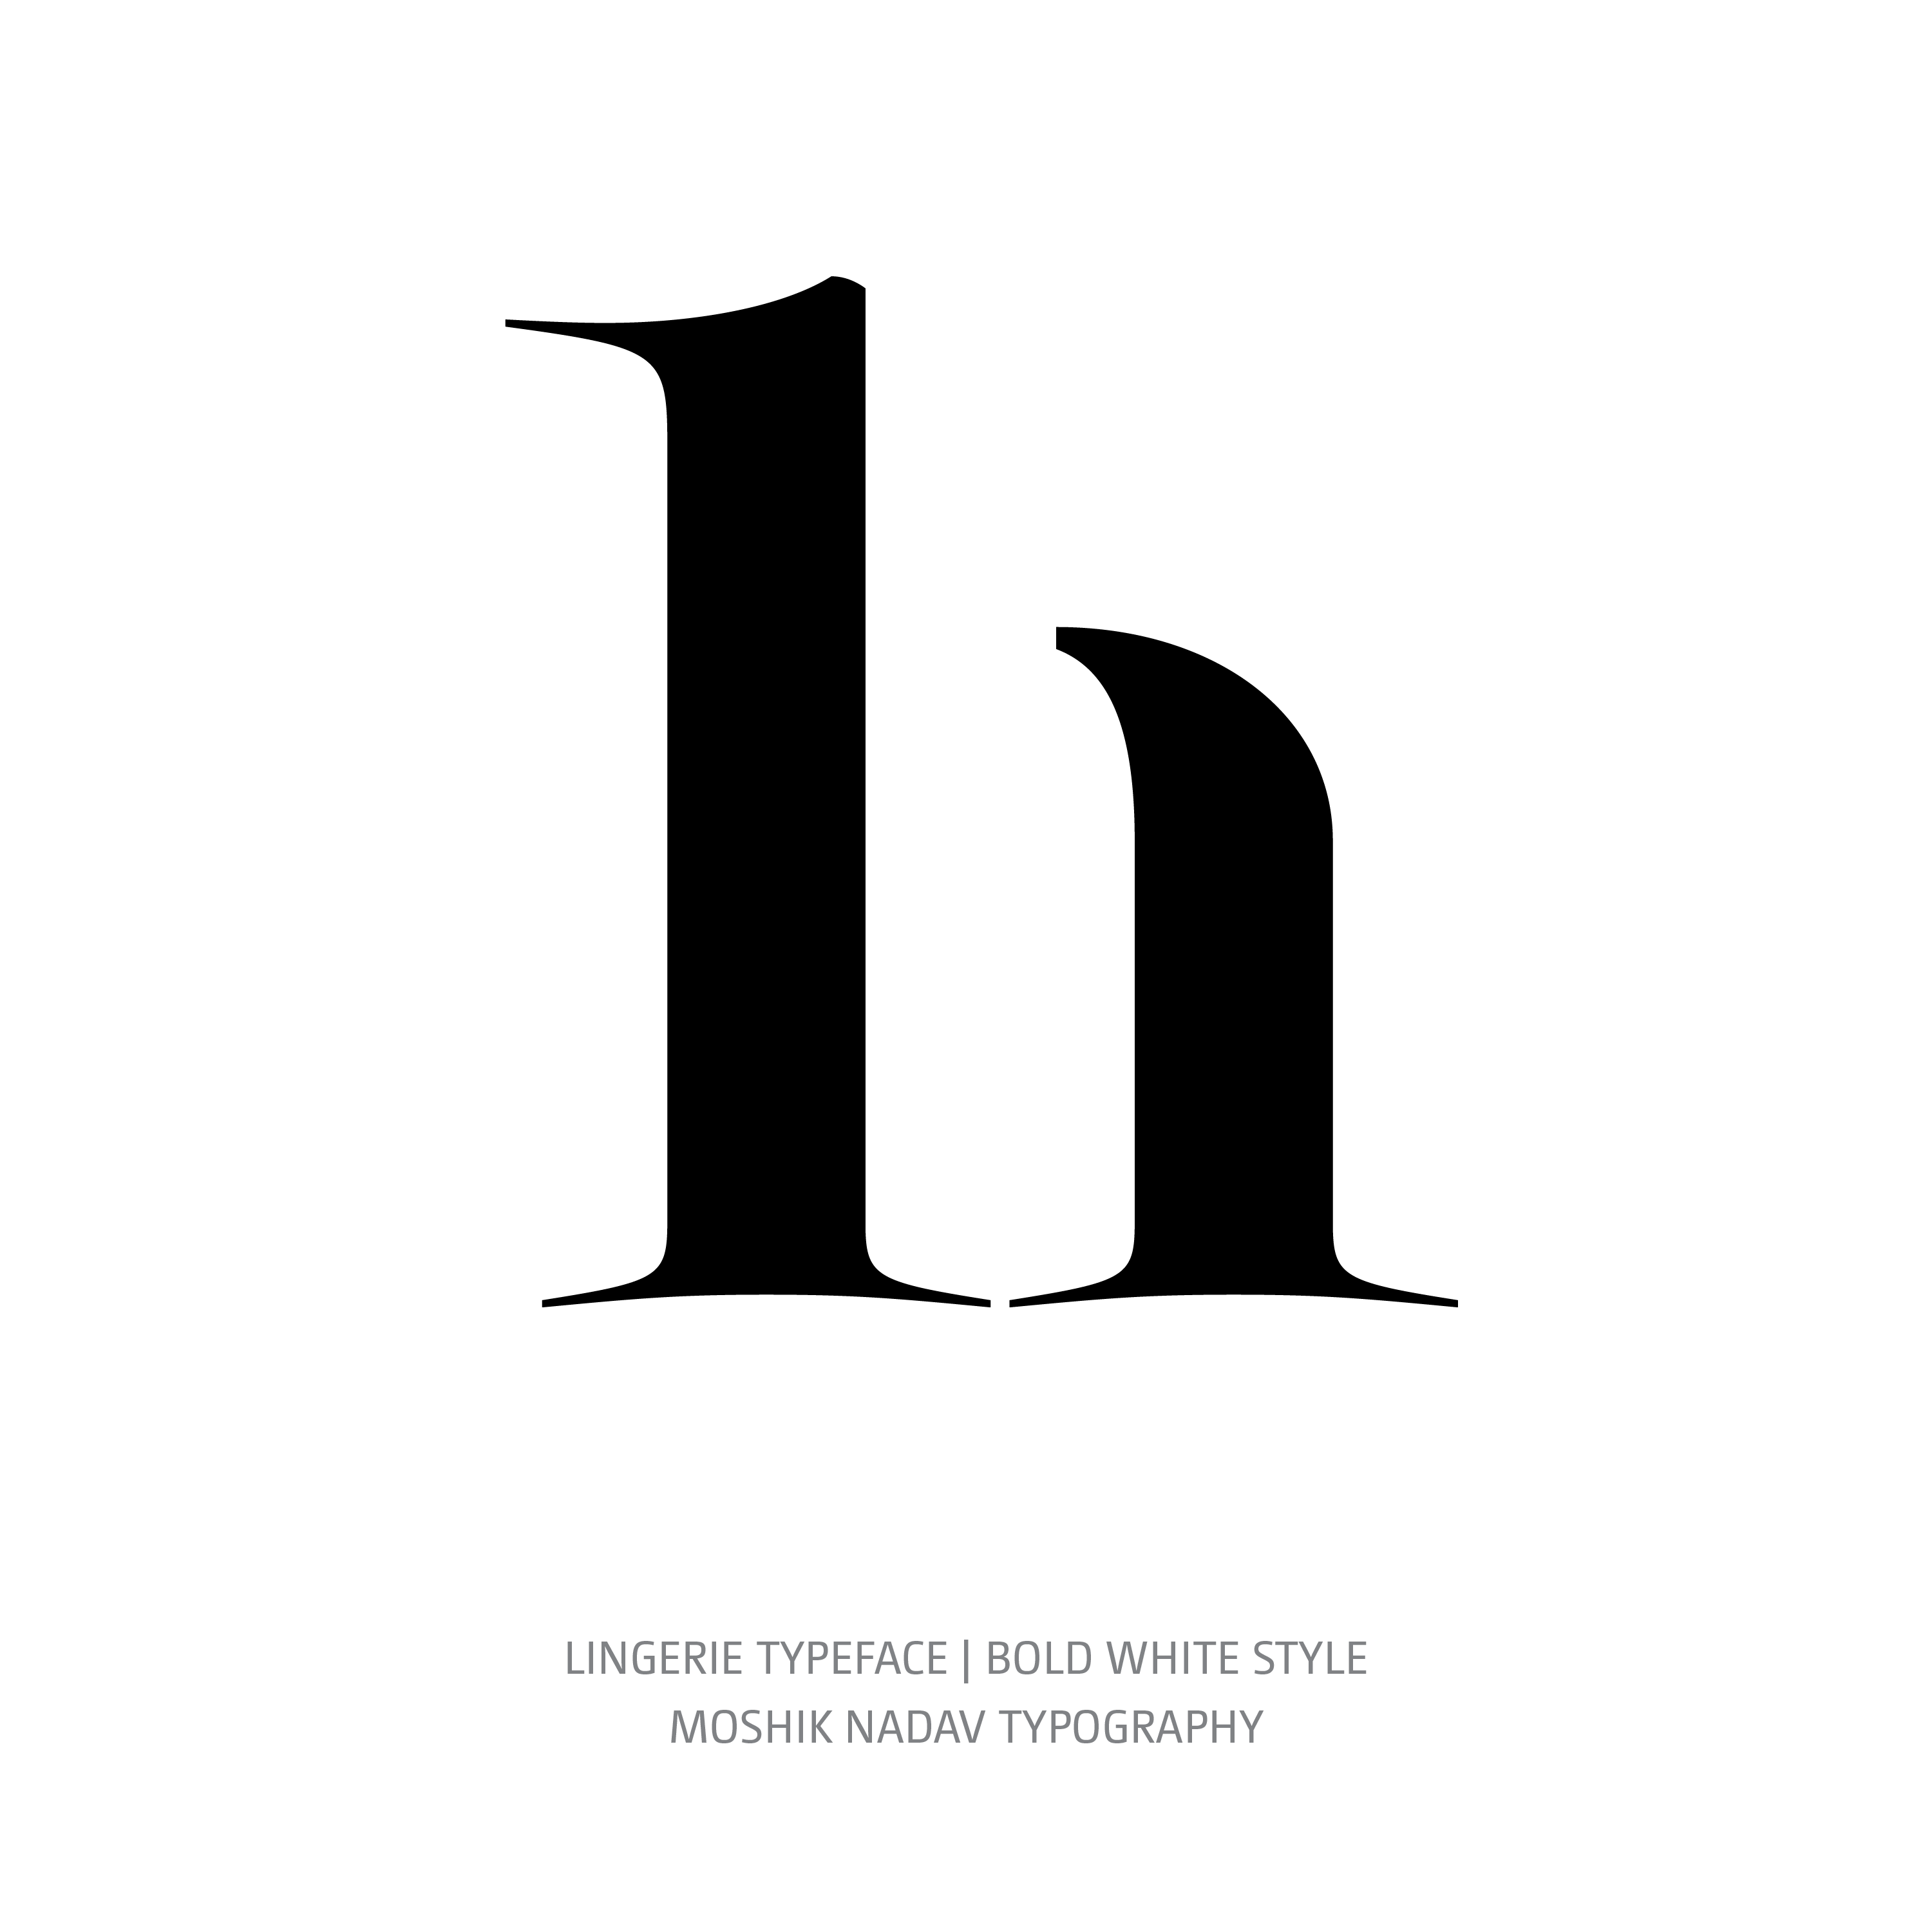 Lingerie Typeface Bold White h